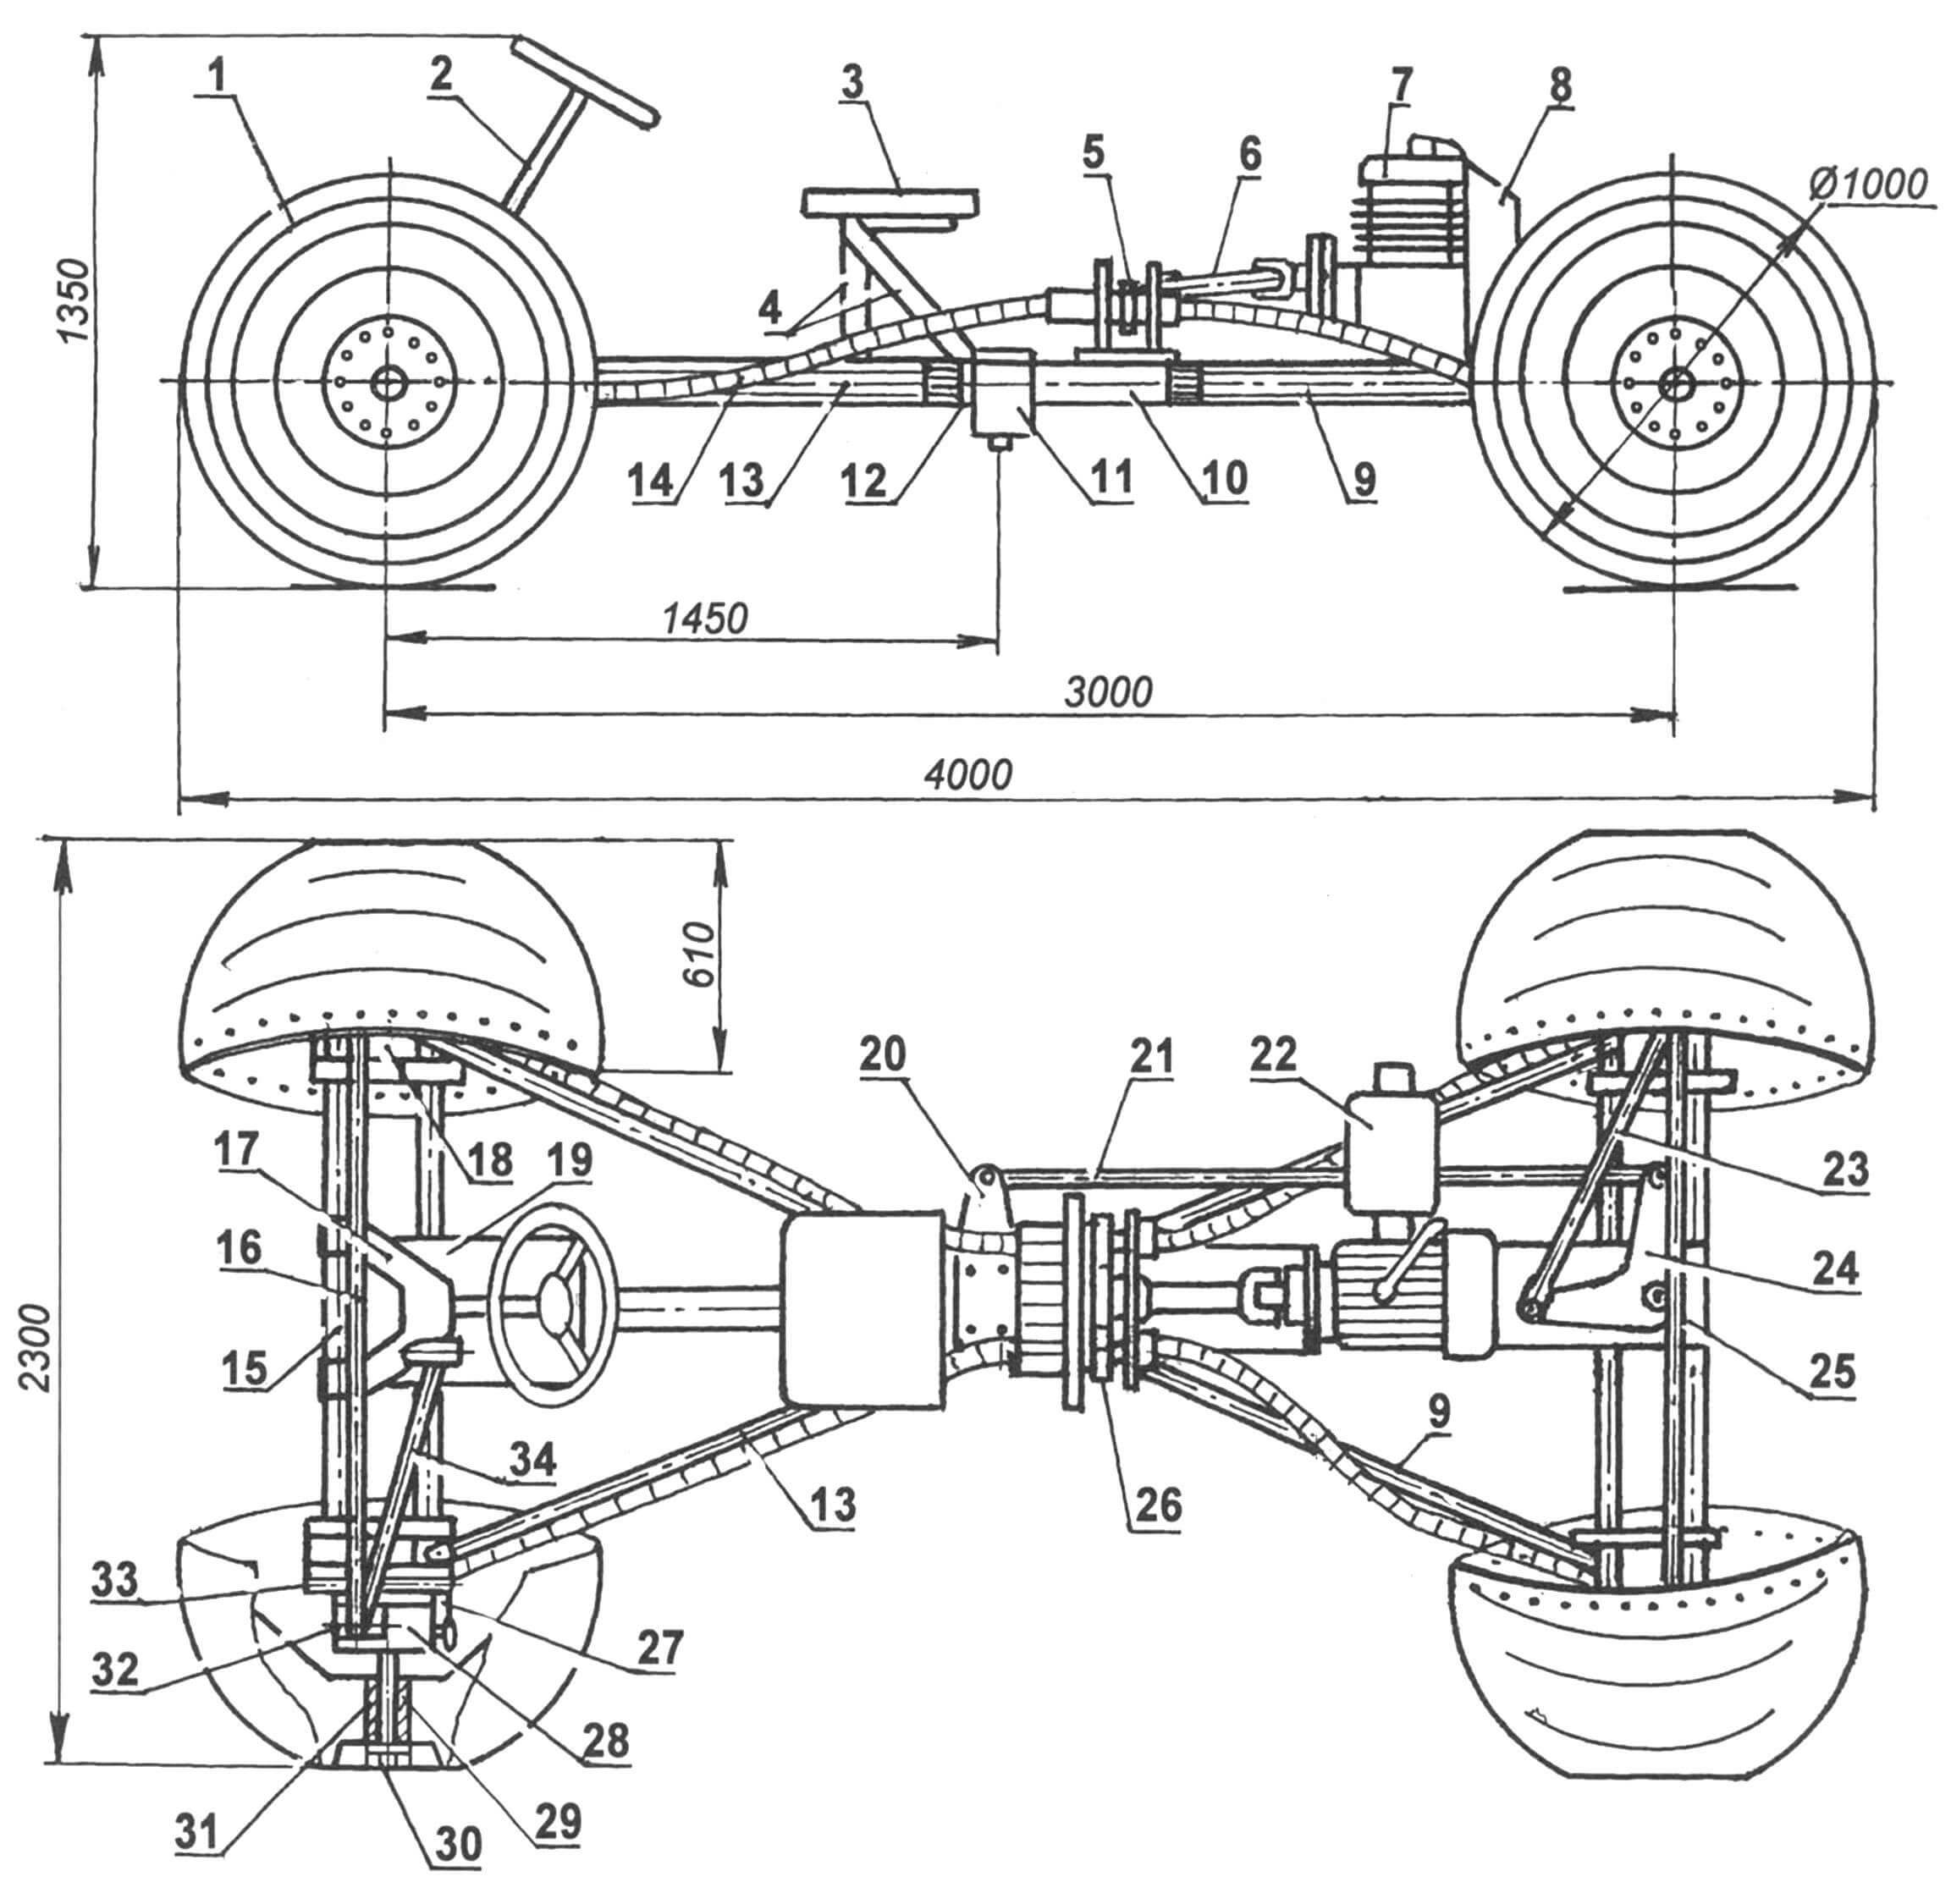 Компоновка и геометрическая схема вездеходного транспортного средства: 1 - колесо; 2 - рулевой механизм (от автомобиля ЗАЗ-968);